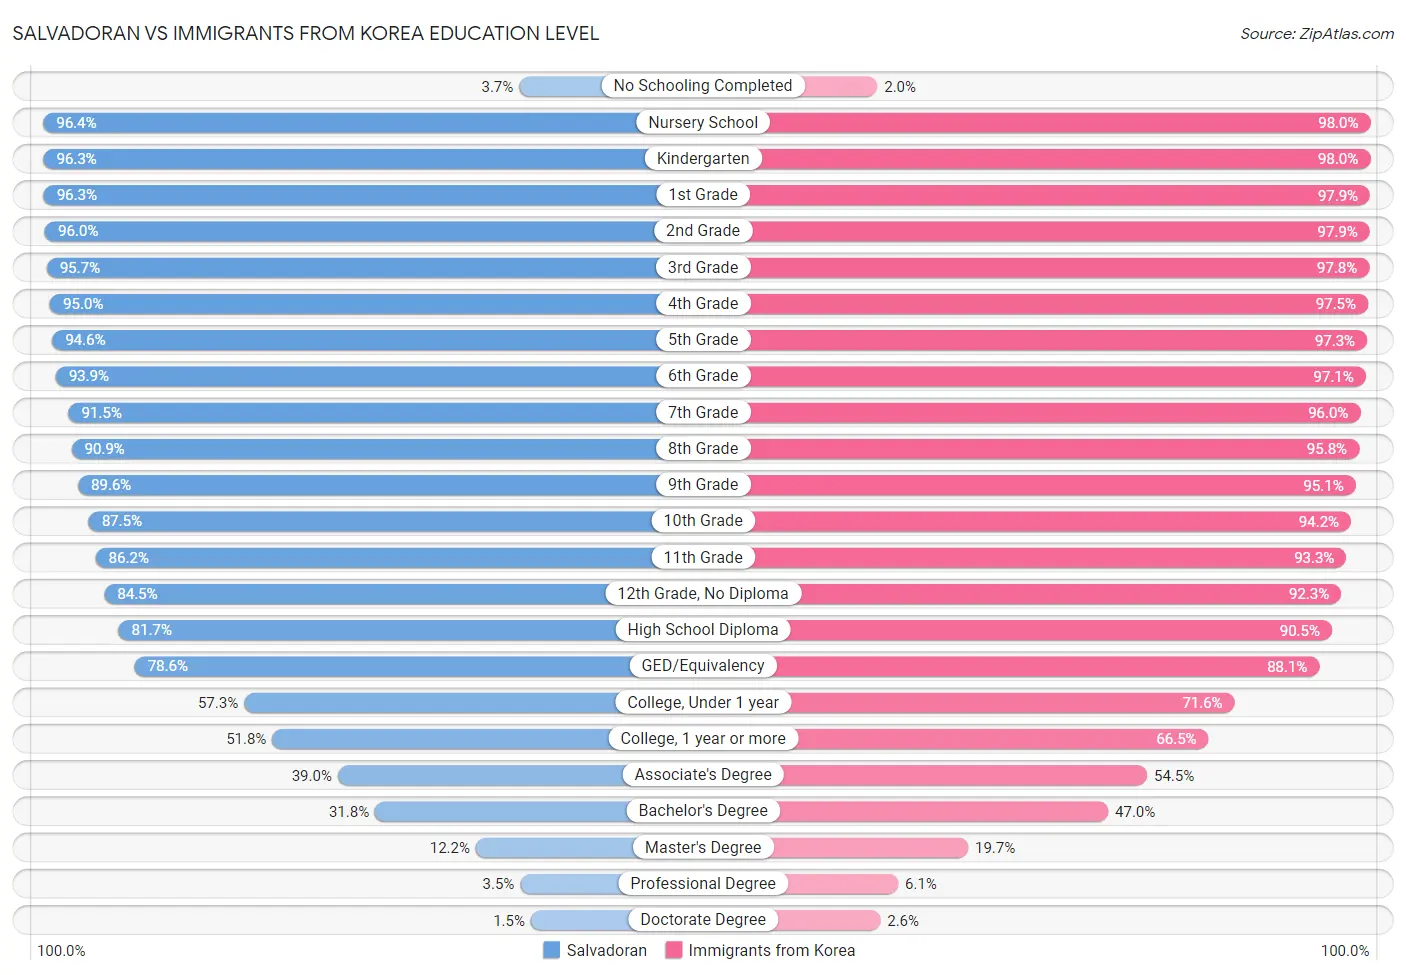 Salvadoran vs Immigrants from Korea Education Level